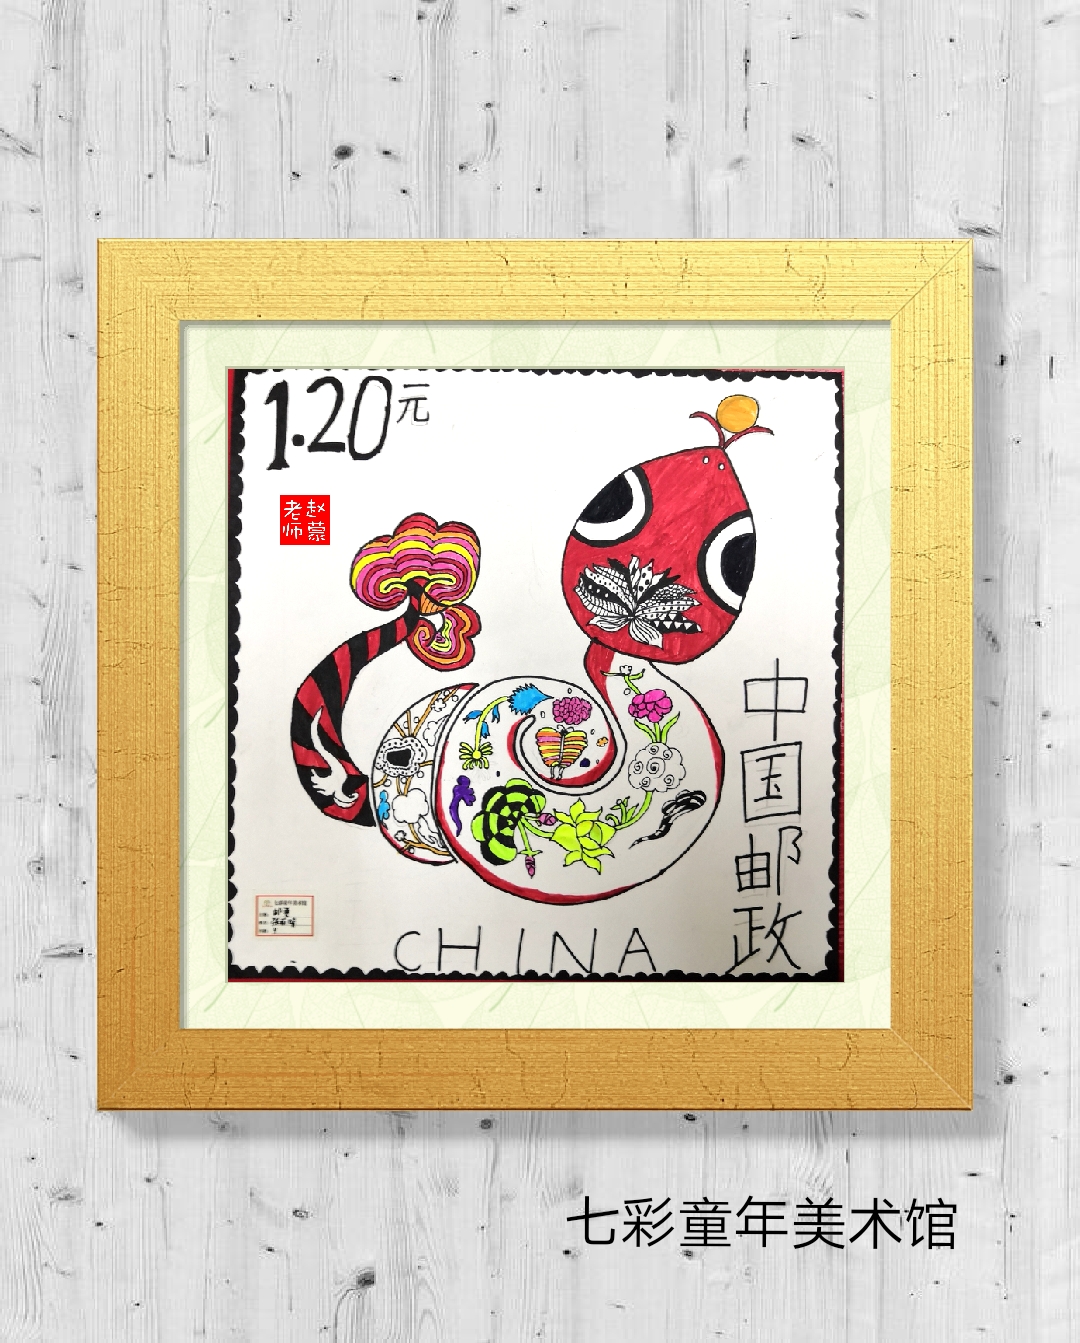 儿童美术,儿童线描十二生肖主题,邮票